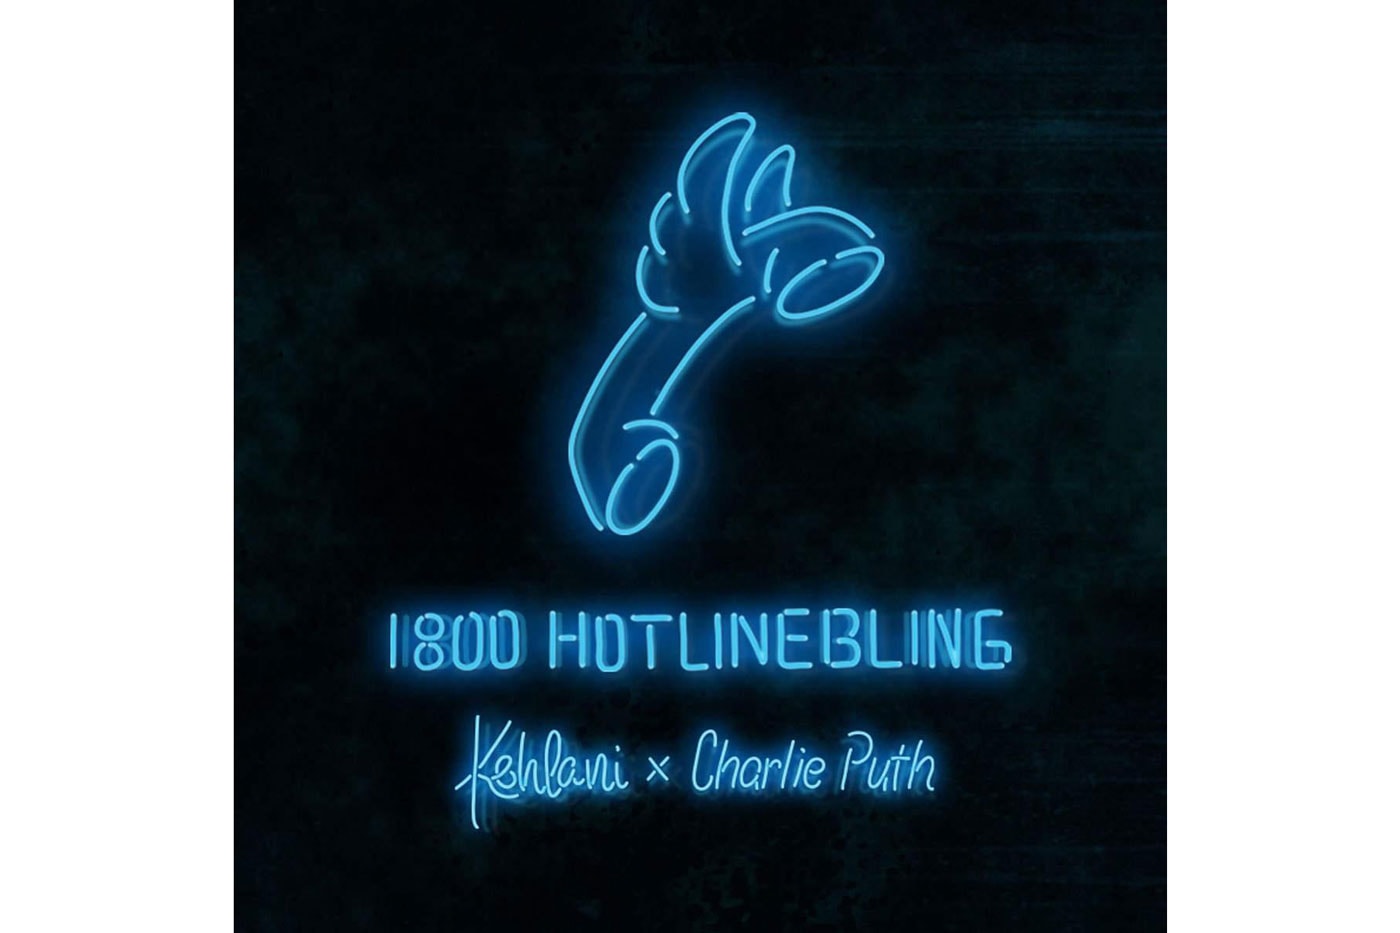 Kehlani and Charlie Puth Cover Drake's "Hotline Bling"